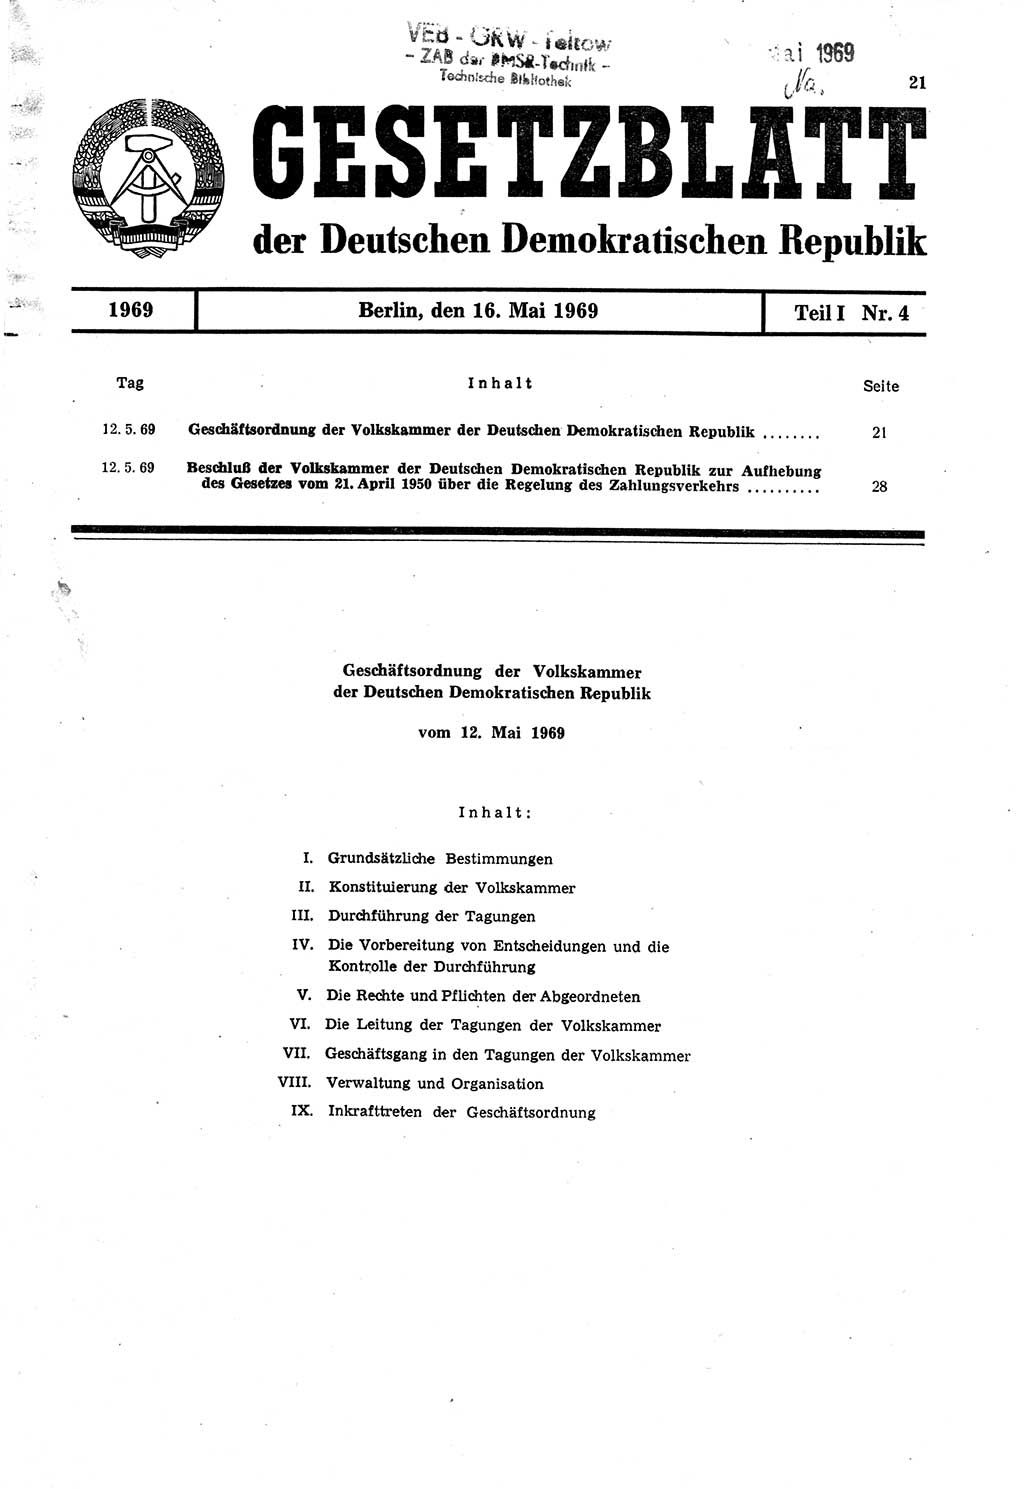 Gesetzblatt (GBl.) der Deutschen Demokratischen Republik (DDR) Teil Ⅰ 1969, Seite 21 (GBl. DDR Ⅰ 1969, S. 21)